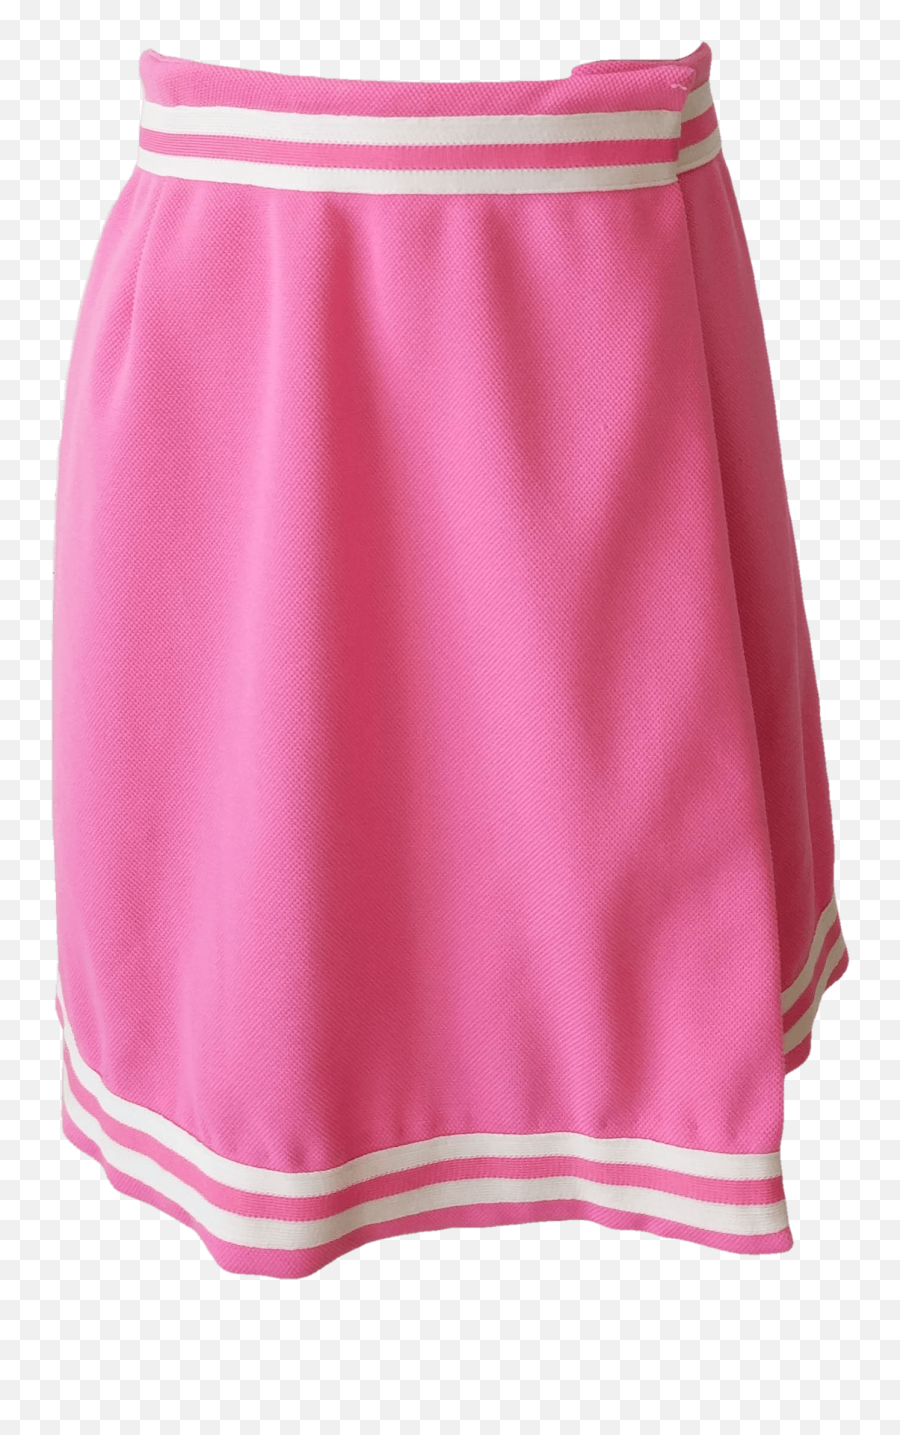 Neon Pink Tennis Skirt By Jantzen - Miniskirt Png,Skirt Png